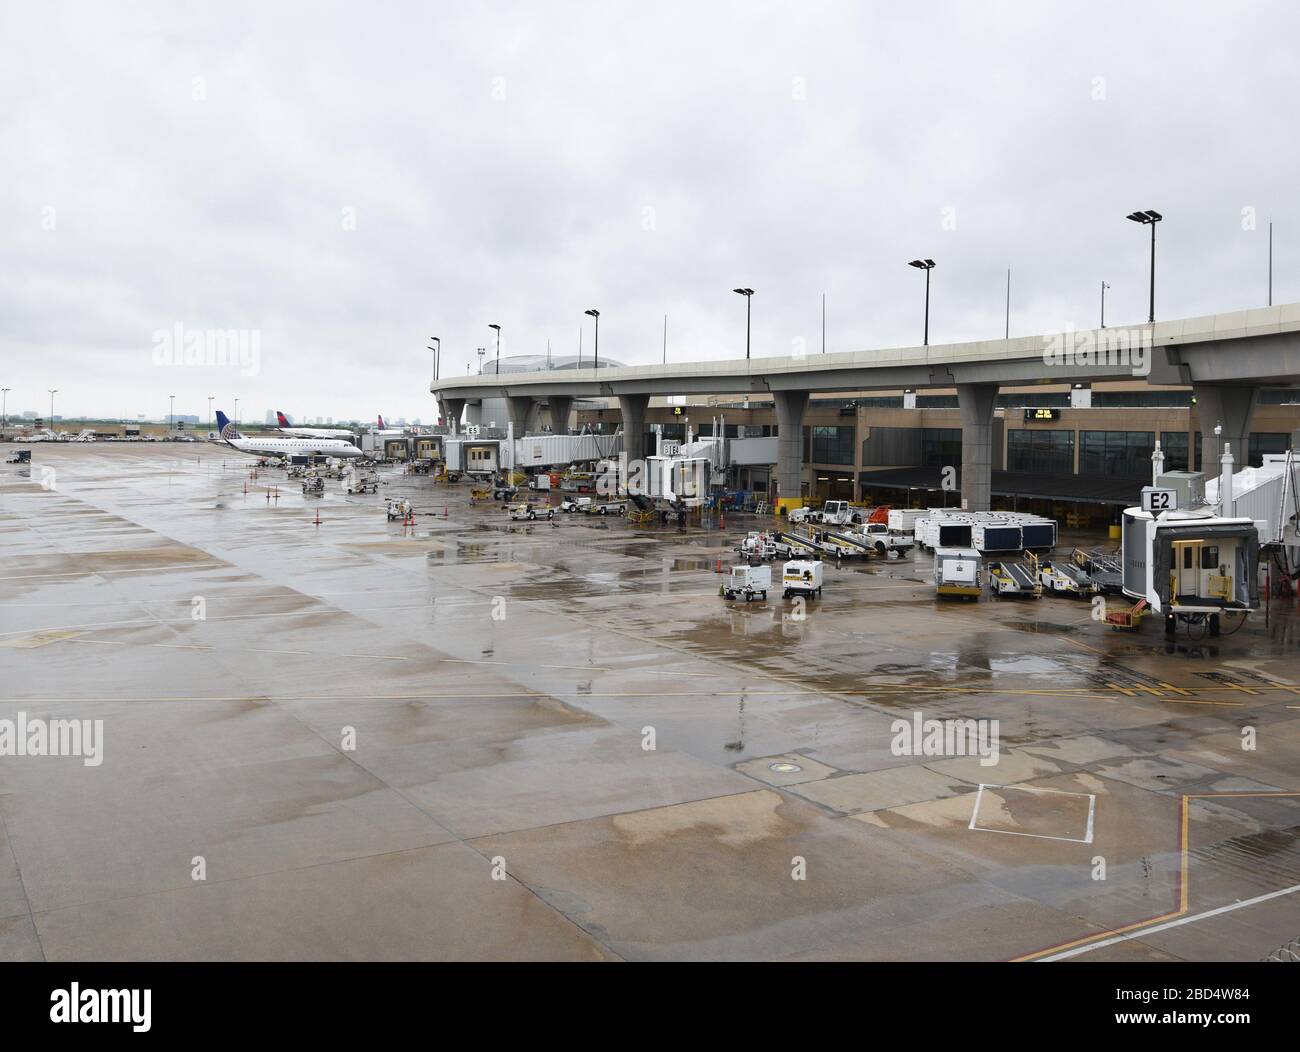 Dallas-Ft. Der internationale Flughafen Worth ist einer der meistfrequentierten der Welt, aber nicht während der weltweiten Coronavirus Pandemie. Da die Fluggesellschaften den größten Teil ihres Geschäfts verlieren, bleiben die Terminals am Flughafen DFW größtenteils leer. Stockfoto